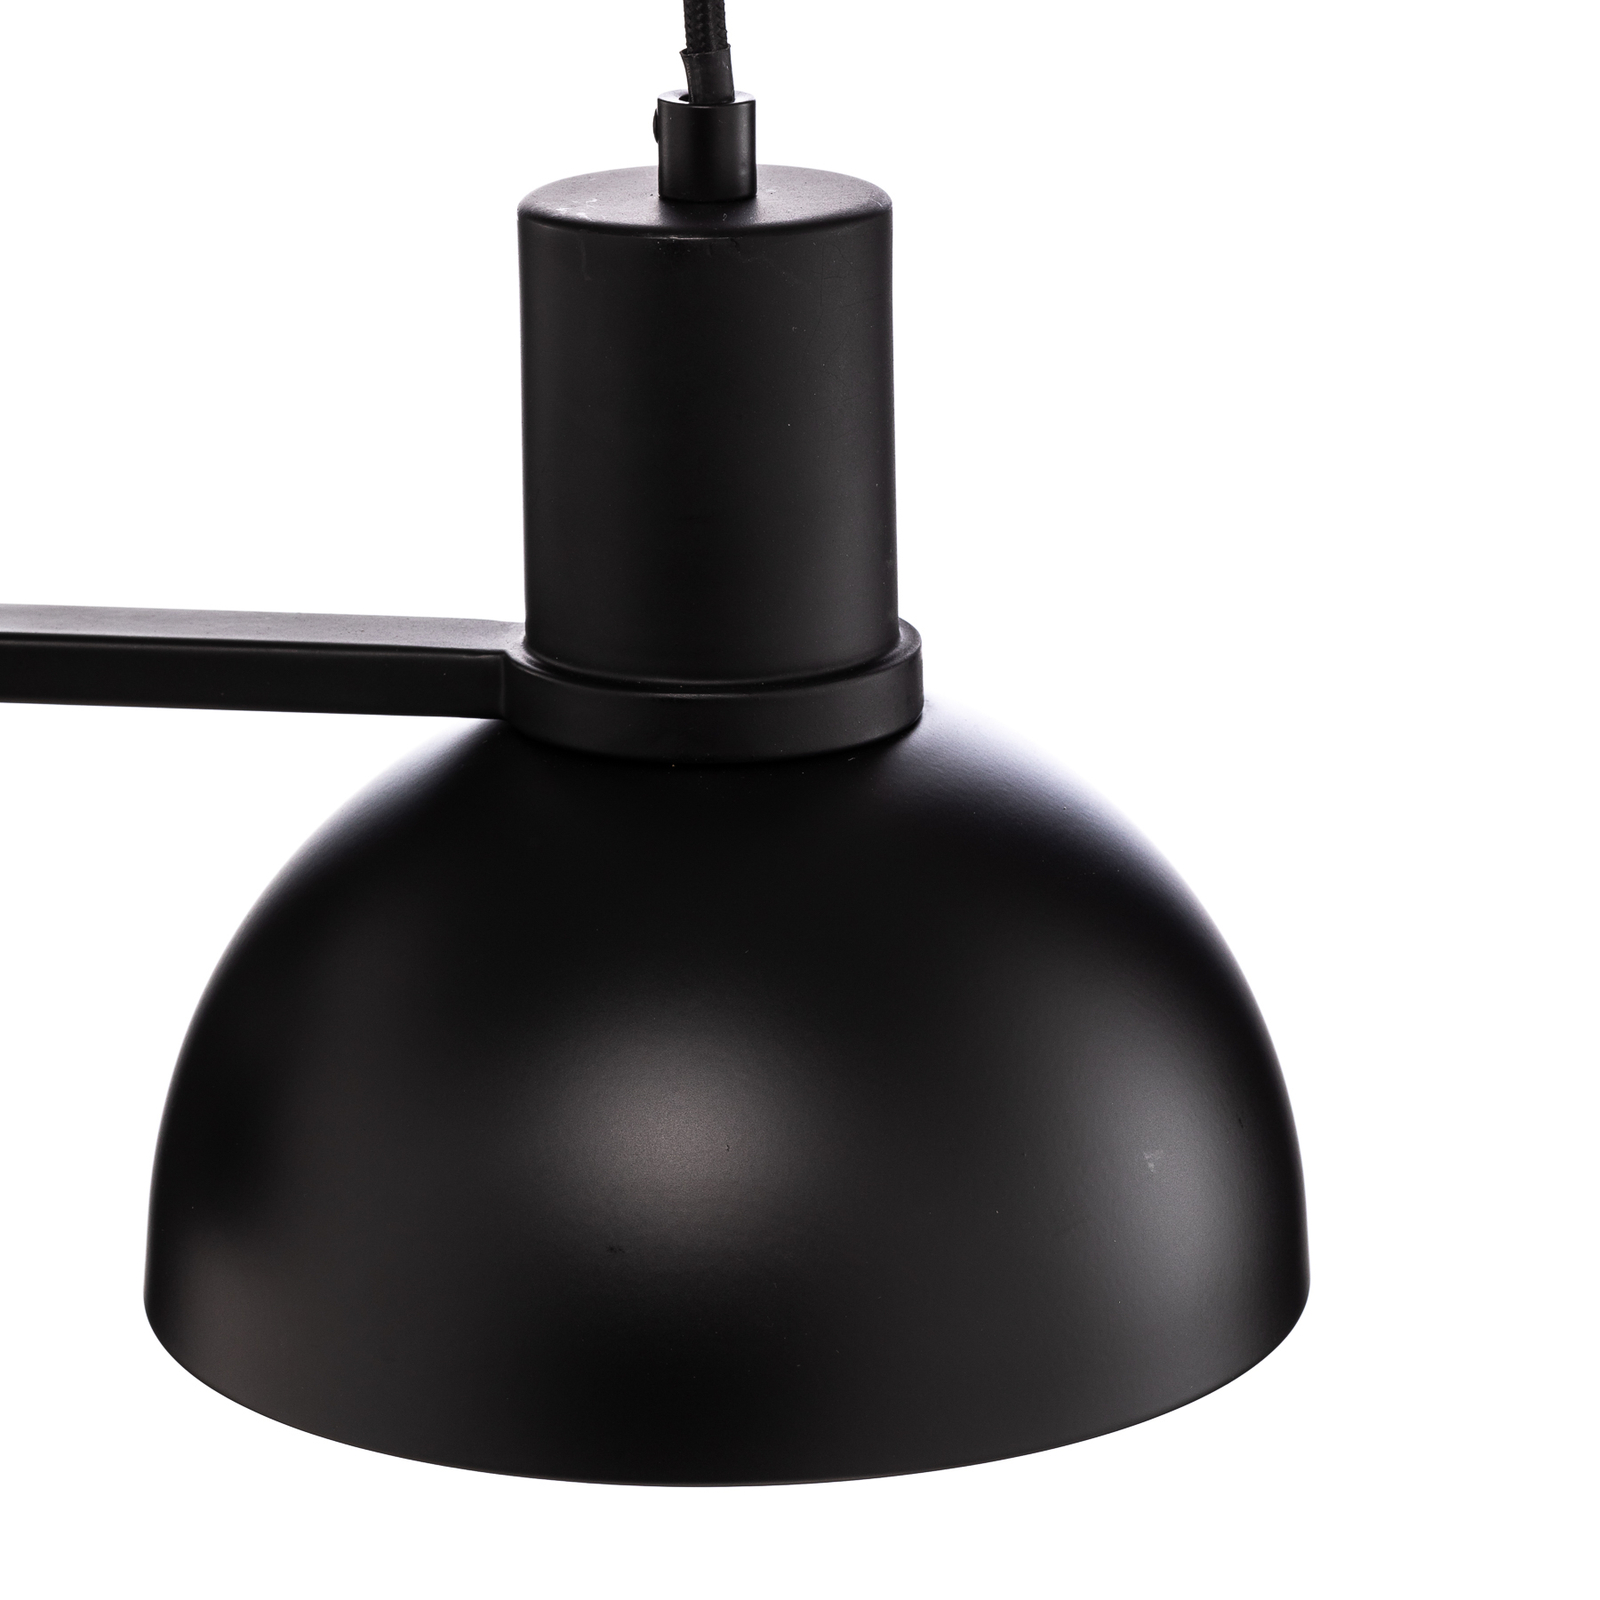 Lucande Mostrid hanging light, black, 2-bulb